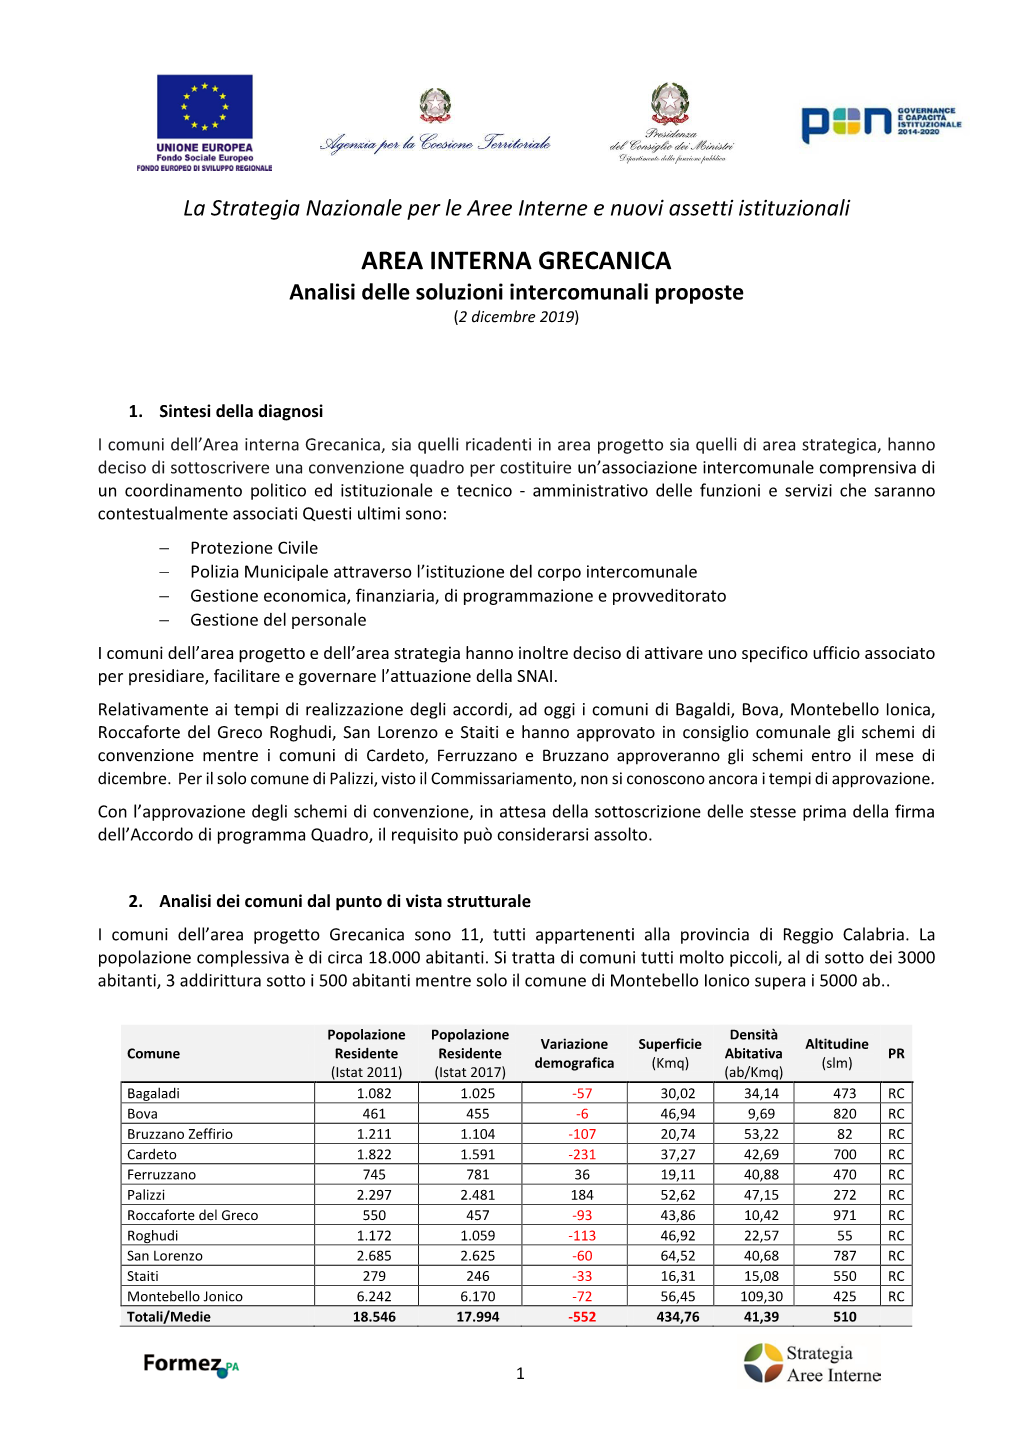 AREA INTERNA GRECANICA Analisi Delle Soluzioni Intercomunali Proposte (2 Dicembre 2019)